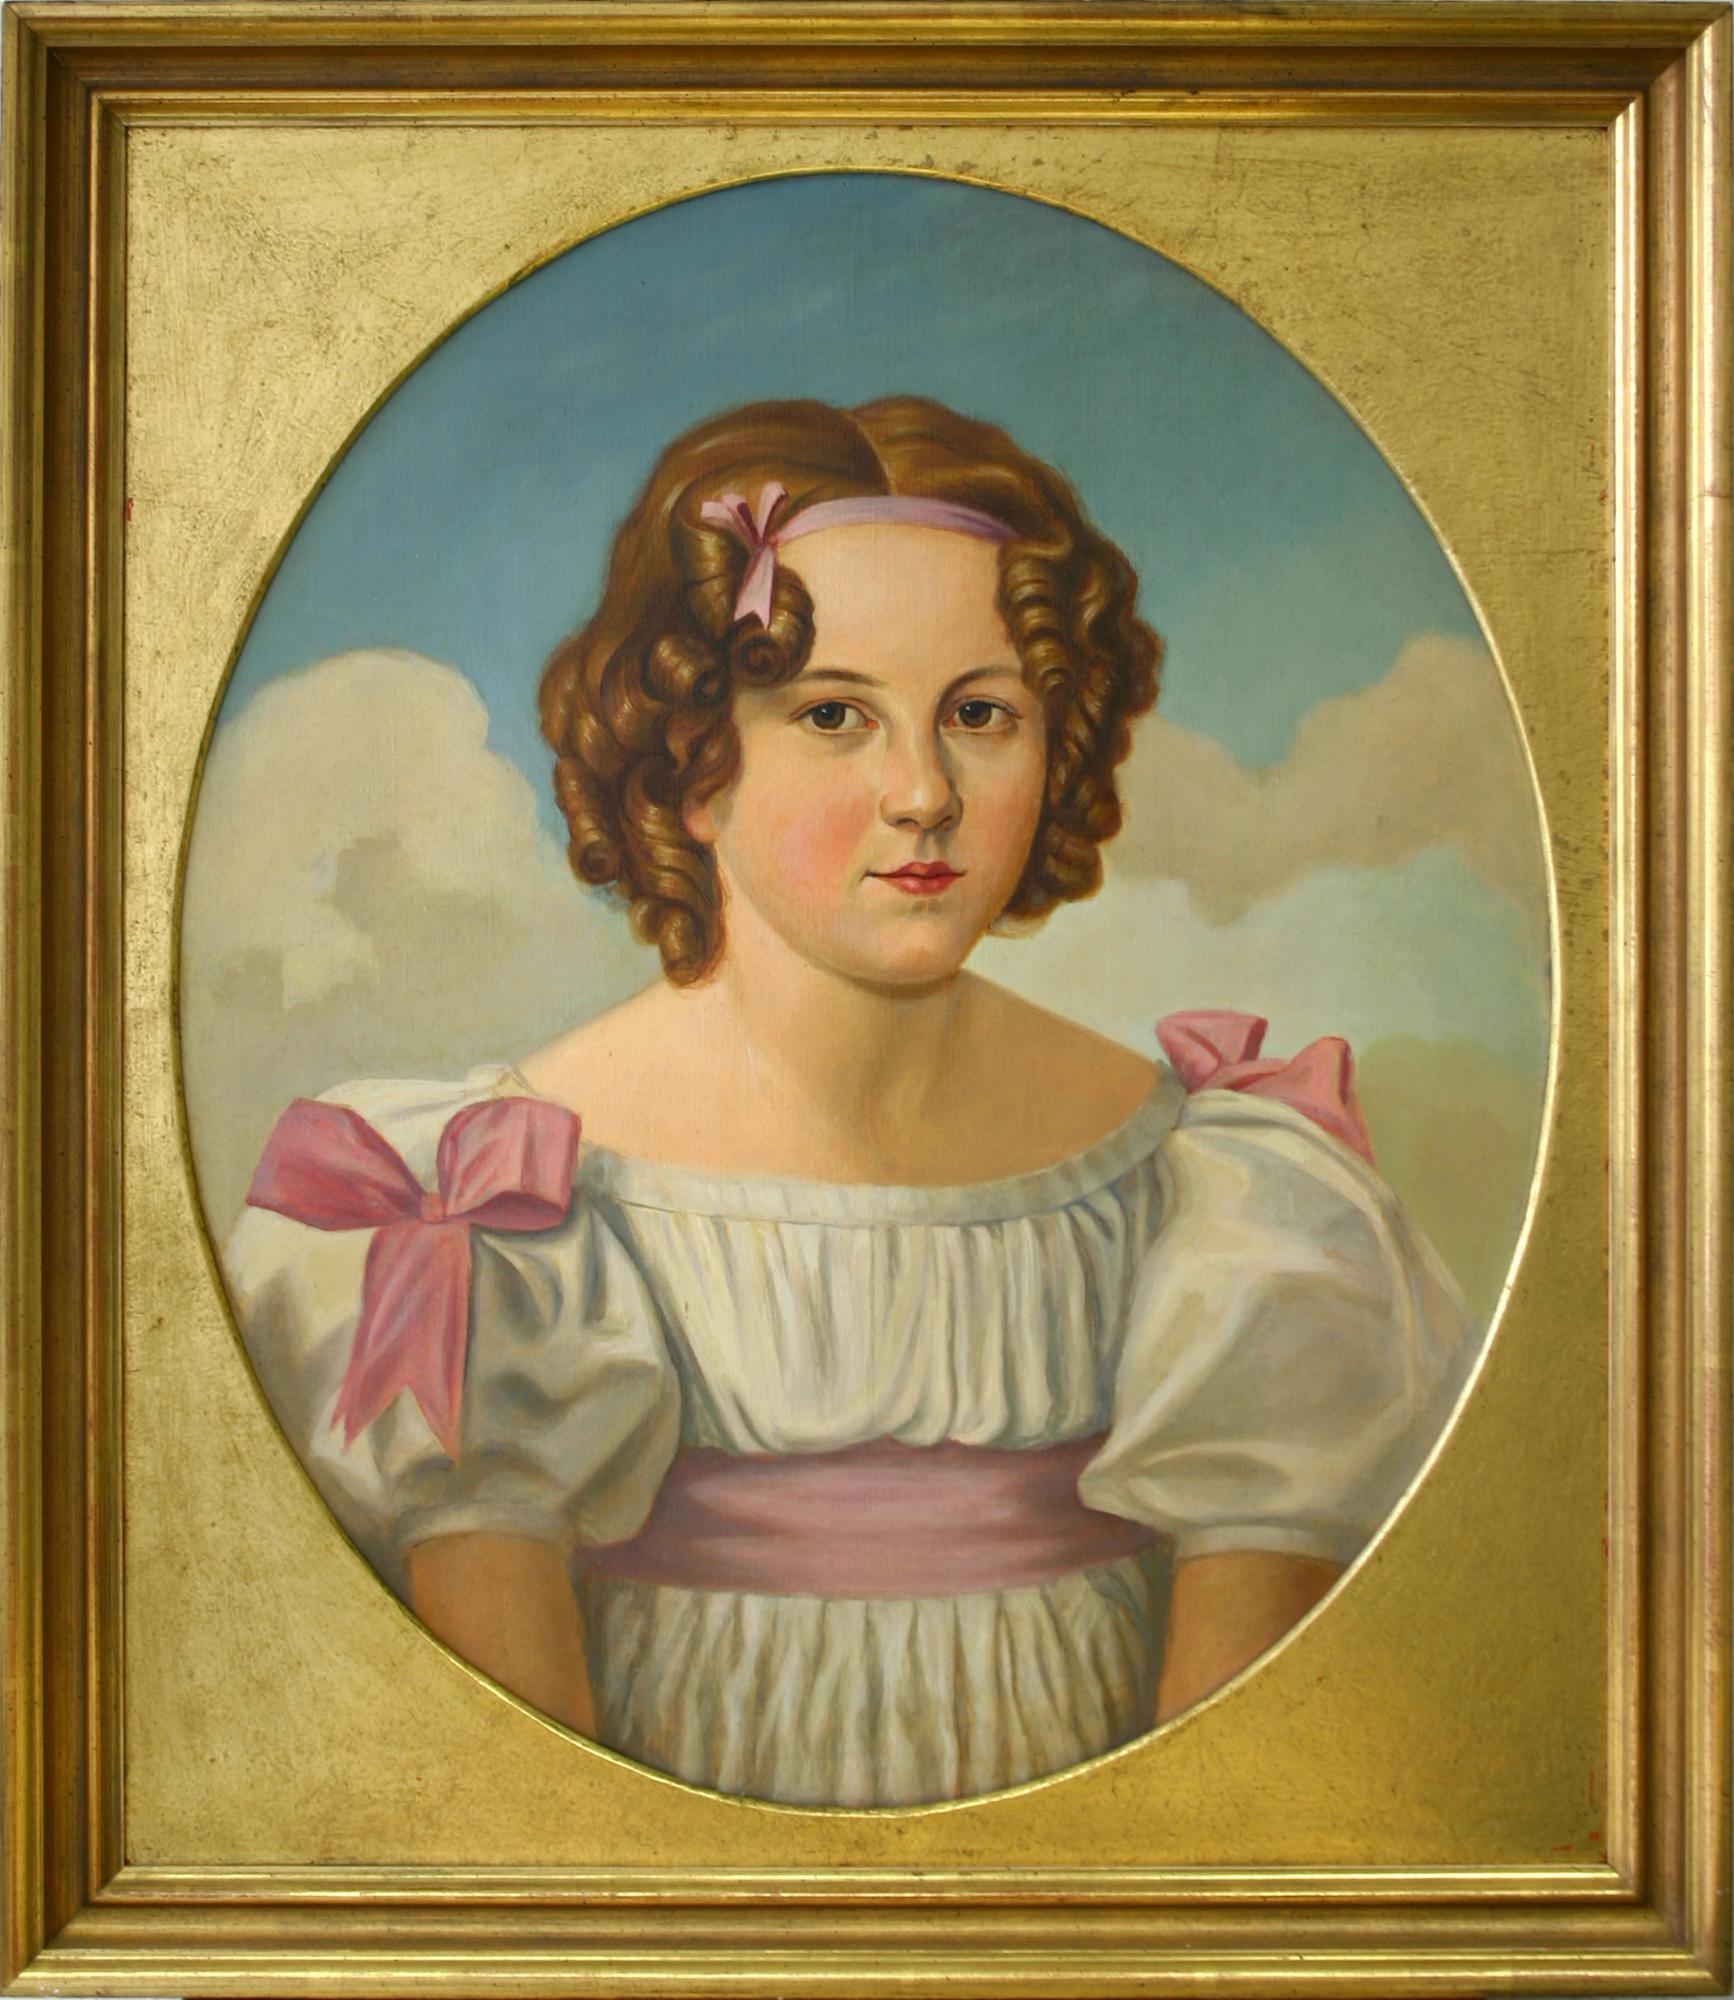 Jugendporträt von Auguste von Sartorius: ein Mädchen aus gutem Haus, das weiß, was es will.